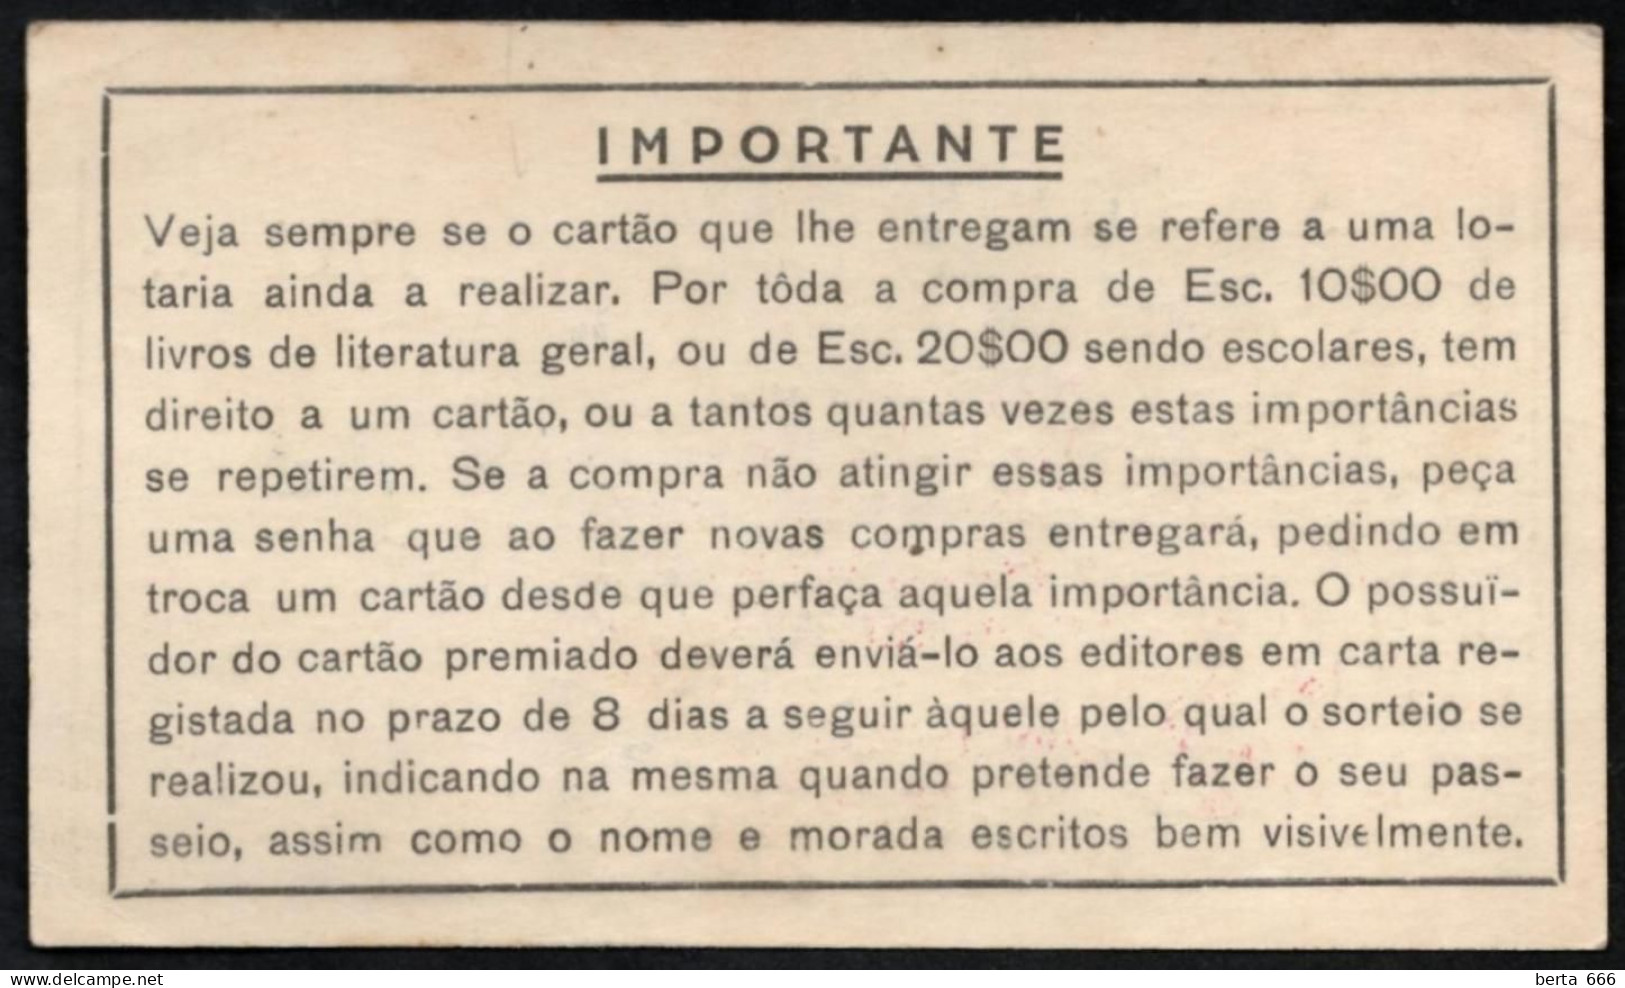 Cartão De Sorteio * Livraria Lello * Rua Das Carmelitas * Porto * Lotaria De 15.08.1931 - Loterijbiljetten